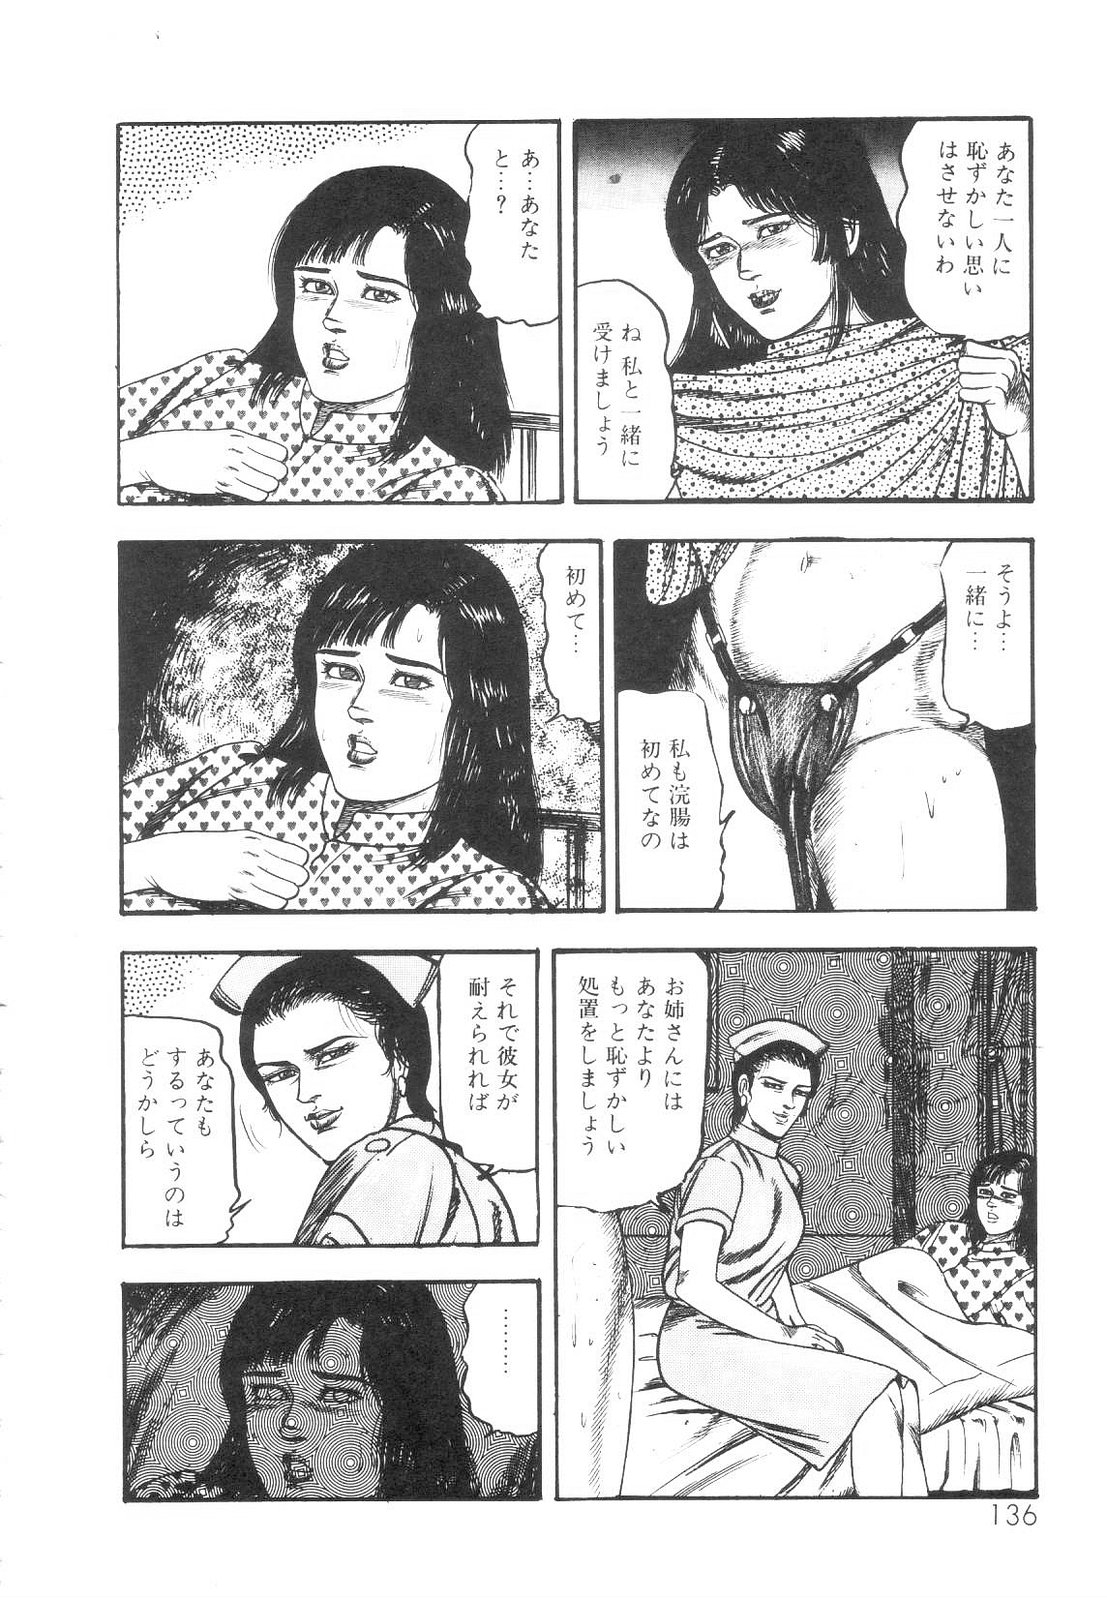 [Sanjou Tomomi] Shiro no Mokushiroku Vol. 1 - Sei Shojo Shion no Shou 136